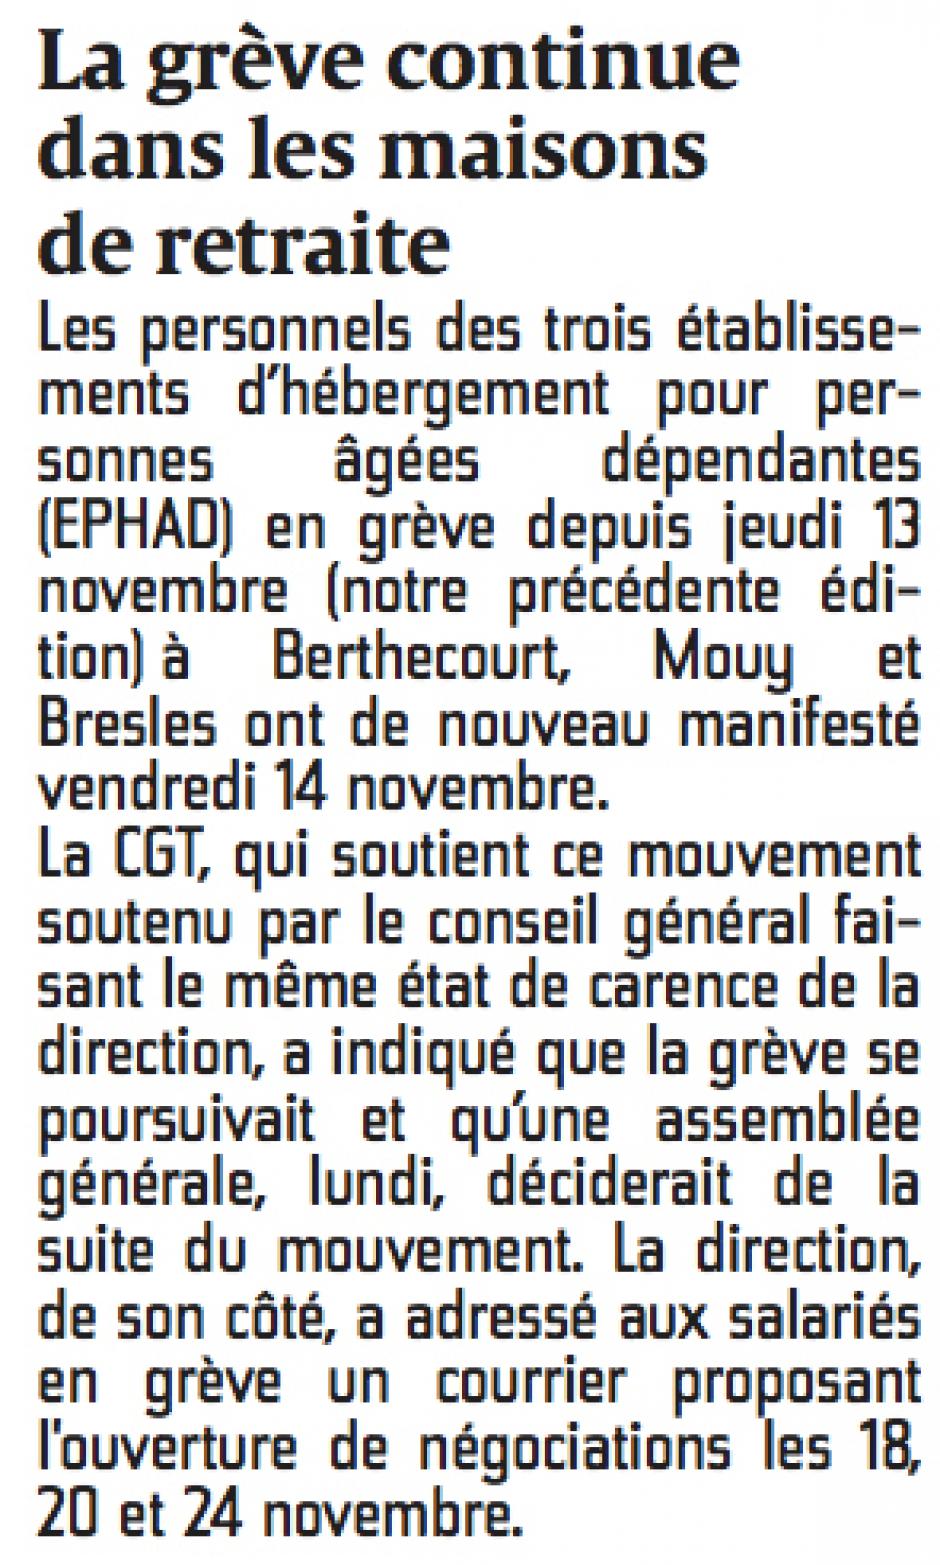 20141115-CP-Bresles-Mouy-Berthecourt-La grève continue dans les maisons de retraite